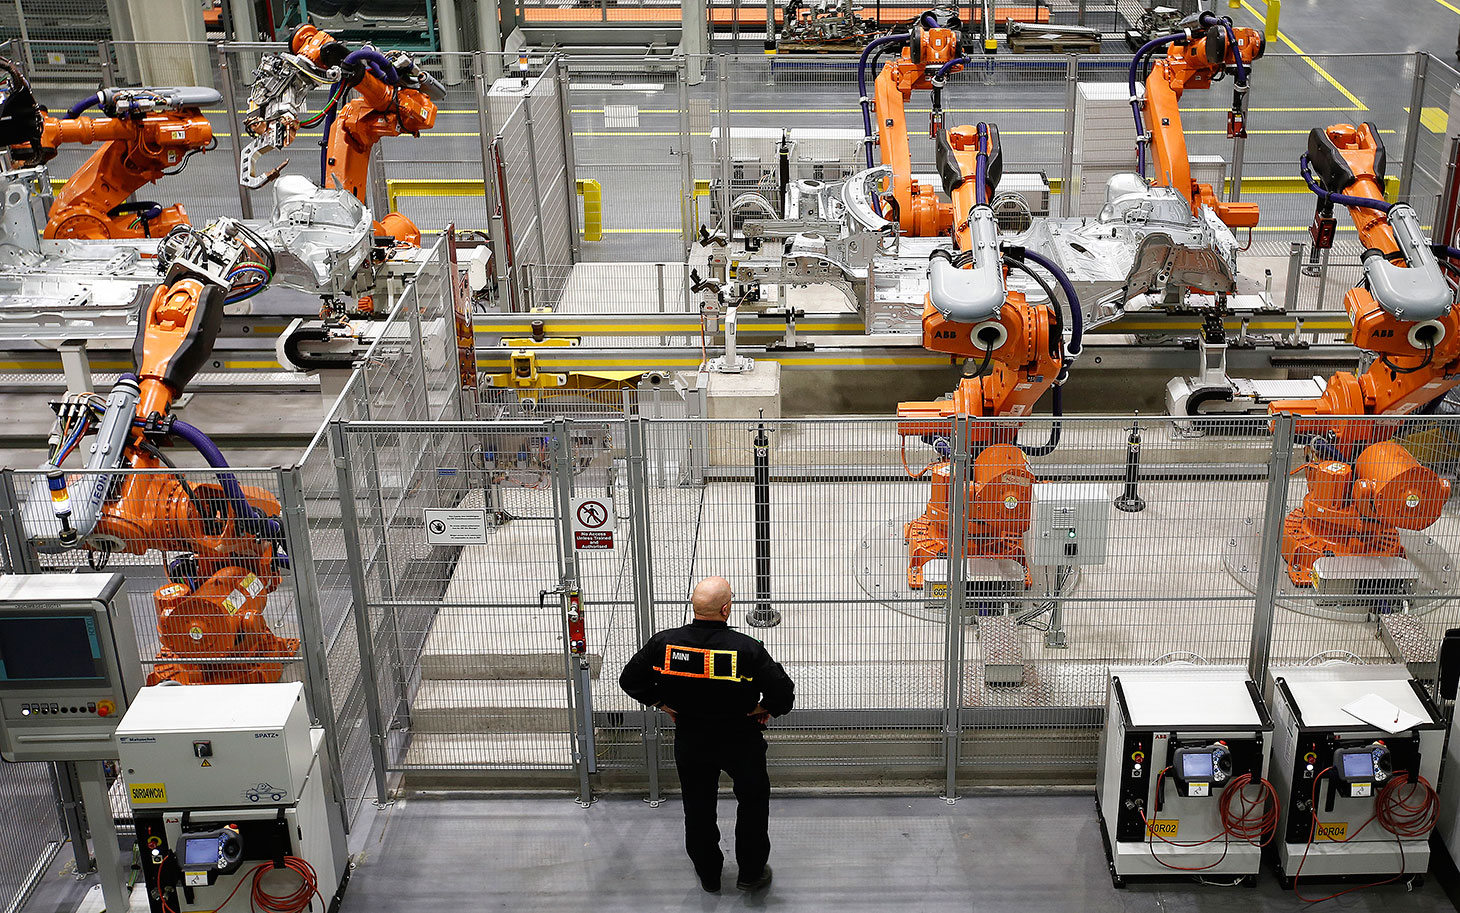 Контрольная работа: Основы и принципы роботизации промышленного производства